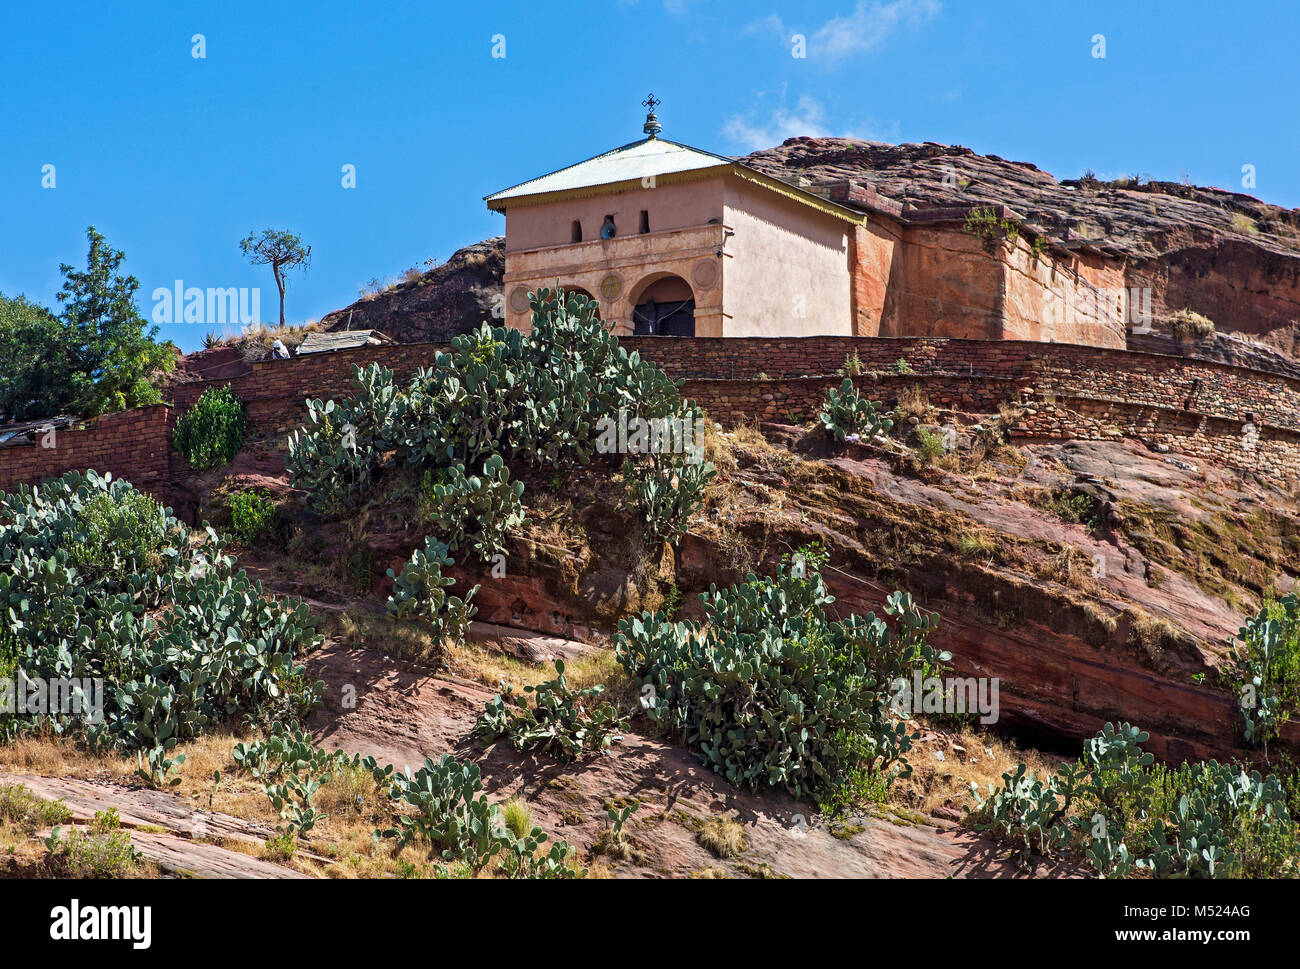 Chiesa monolitica Abreha wa Atsbeha sulla collina rocciosa,di fronte Indian fig opuntias (Opuntia ficus-indica),Gheralta regione Foto Stock